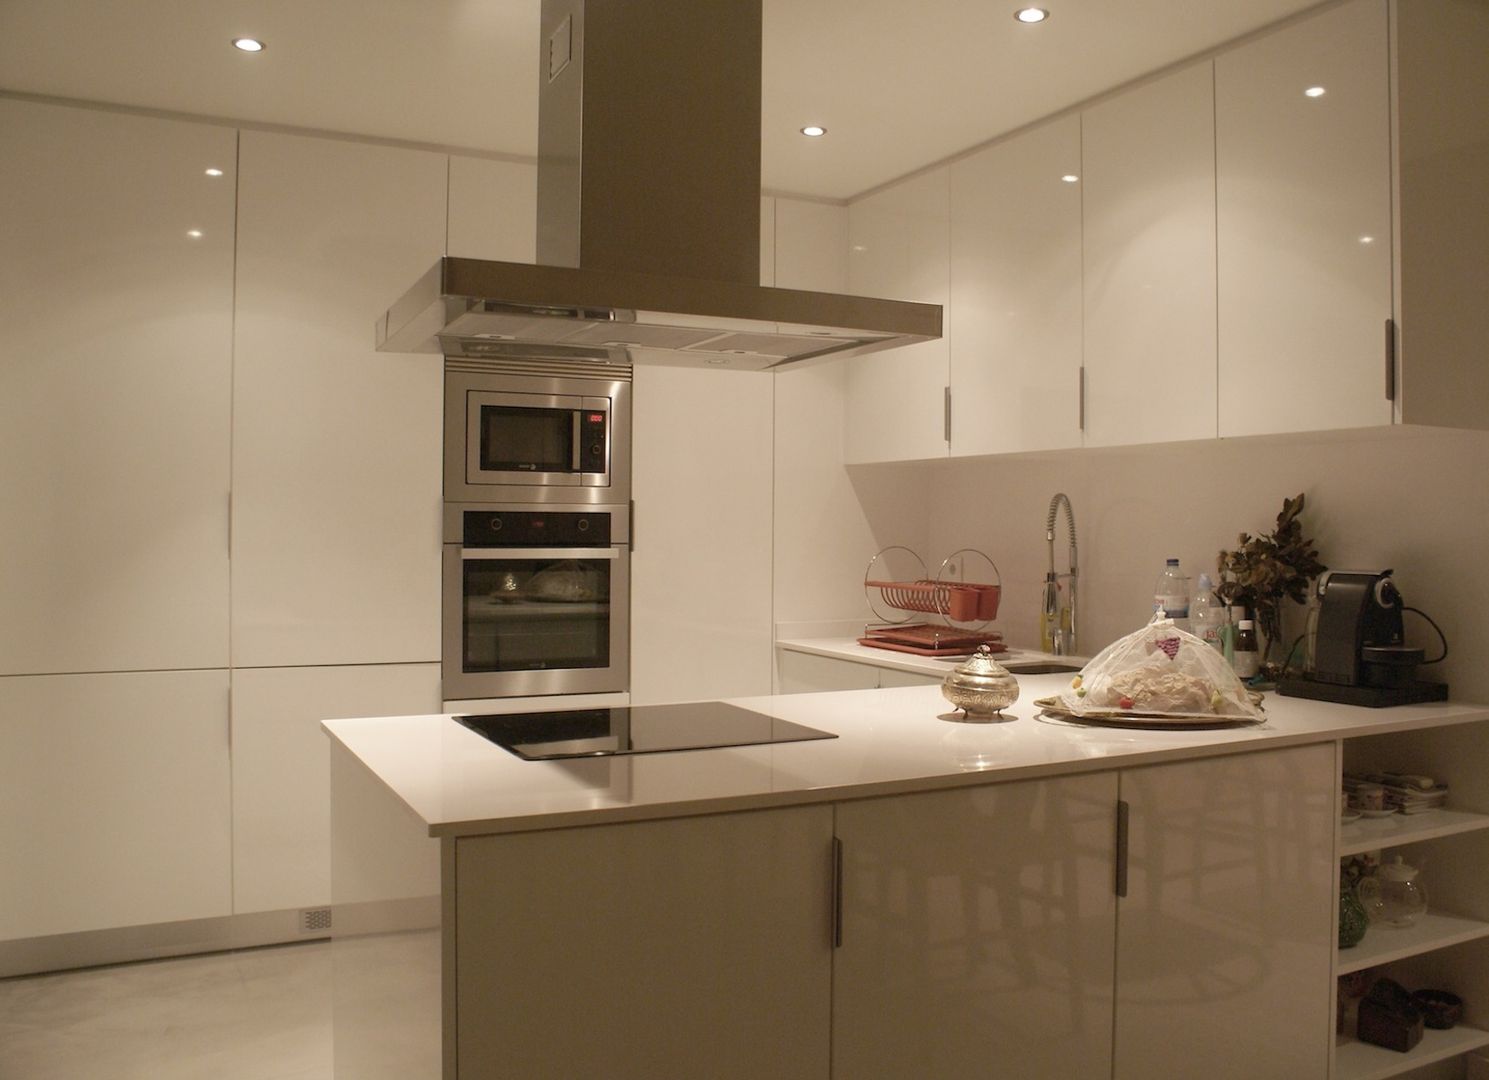 Apartamento CM, involve arquitectos involve arquitectos Cocinas modernas: Ideas, imágenes y decoración